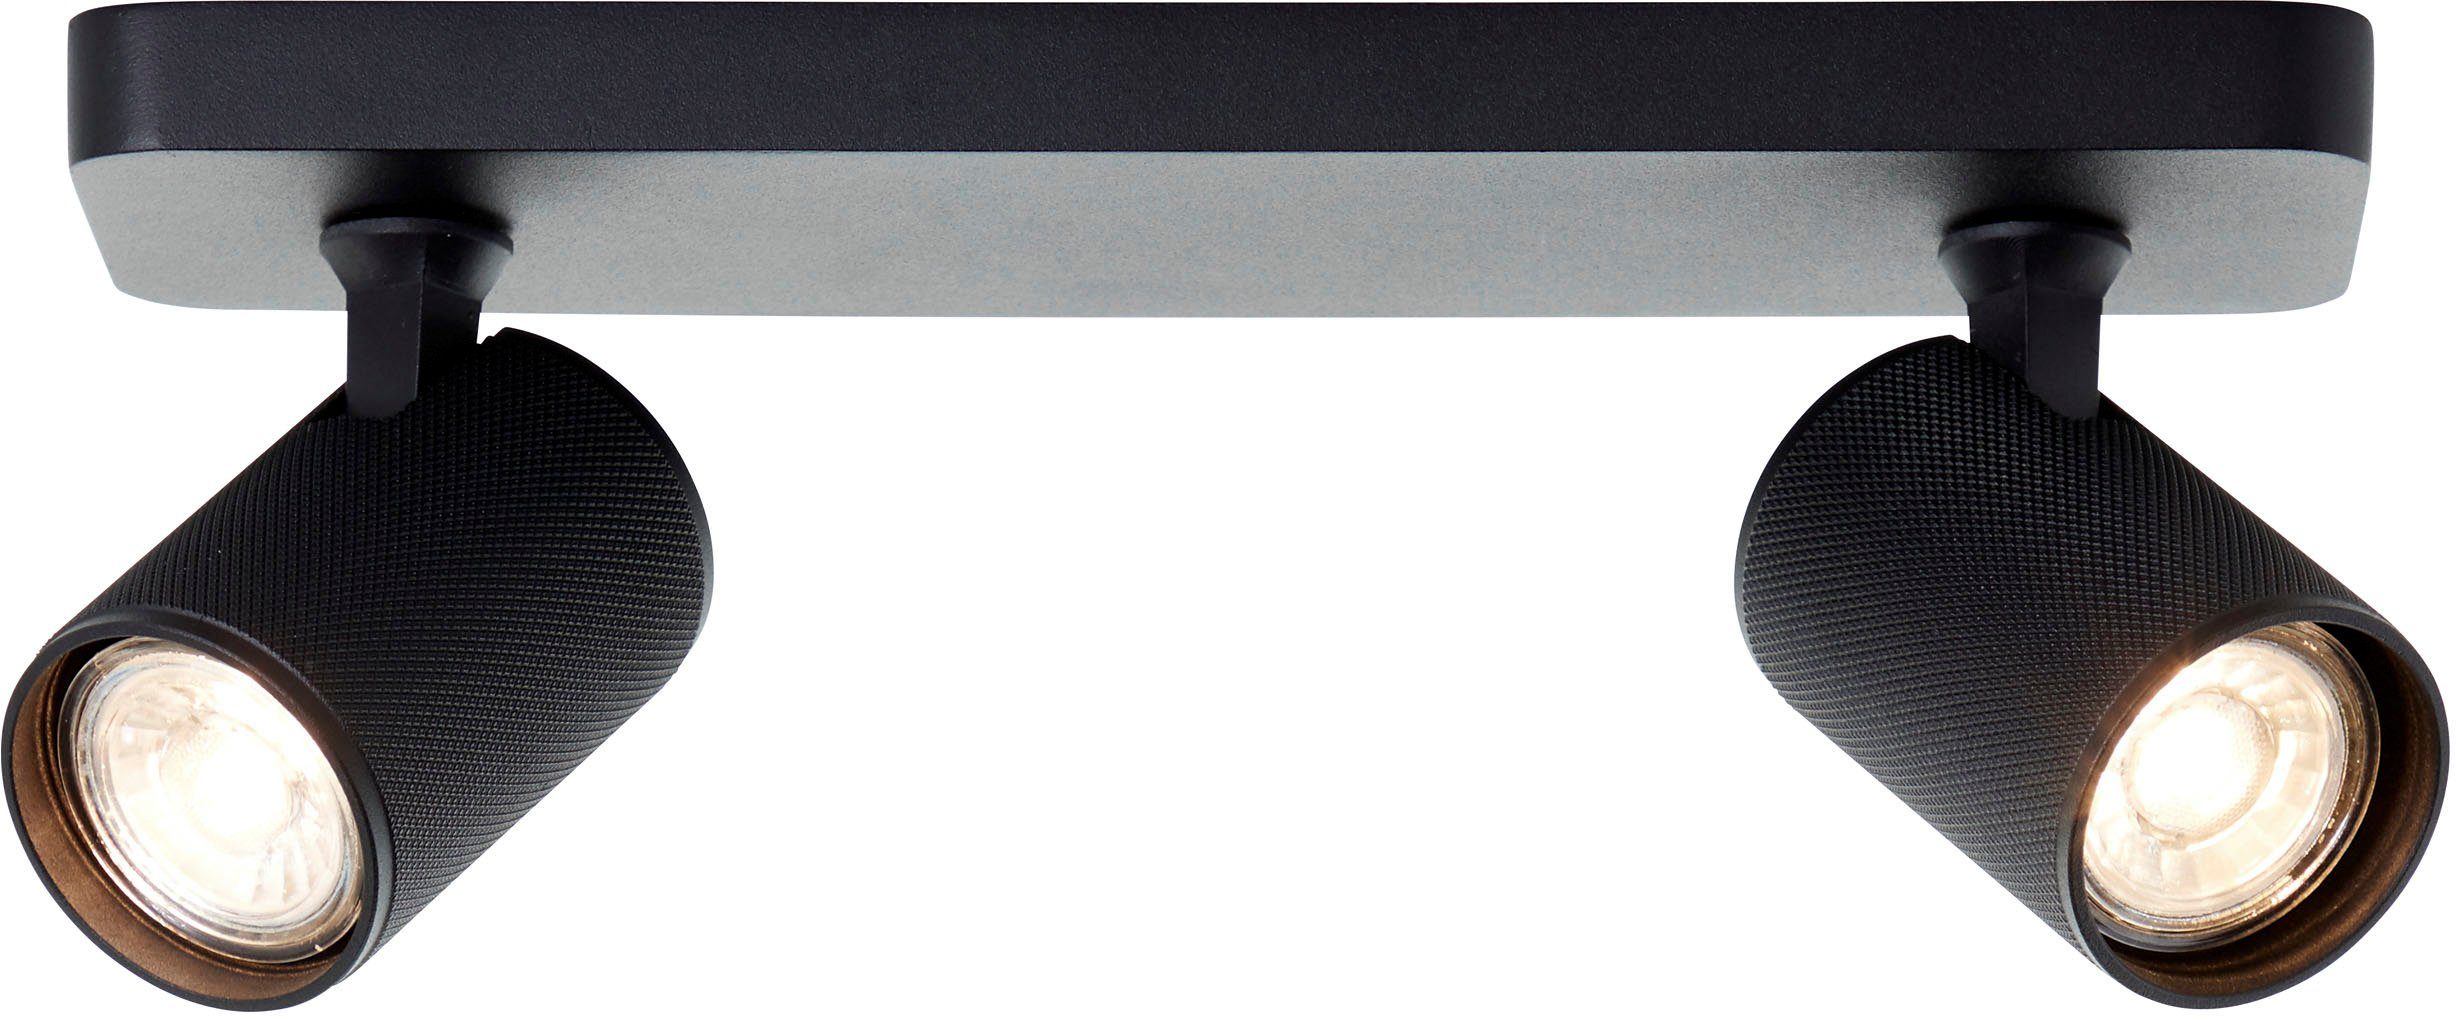 Brilliant Deckenstrahler Marty, LED wechselbar, Warmweiß, Spotbalken schwenkbar, 12x31x9 cm, GU10, 345lm, 3000K, Metall, schwarz